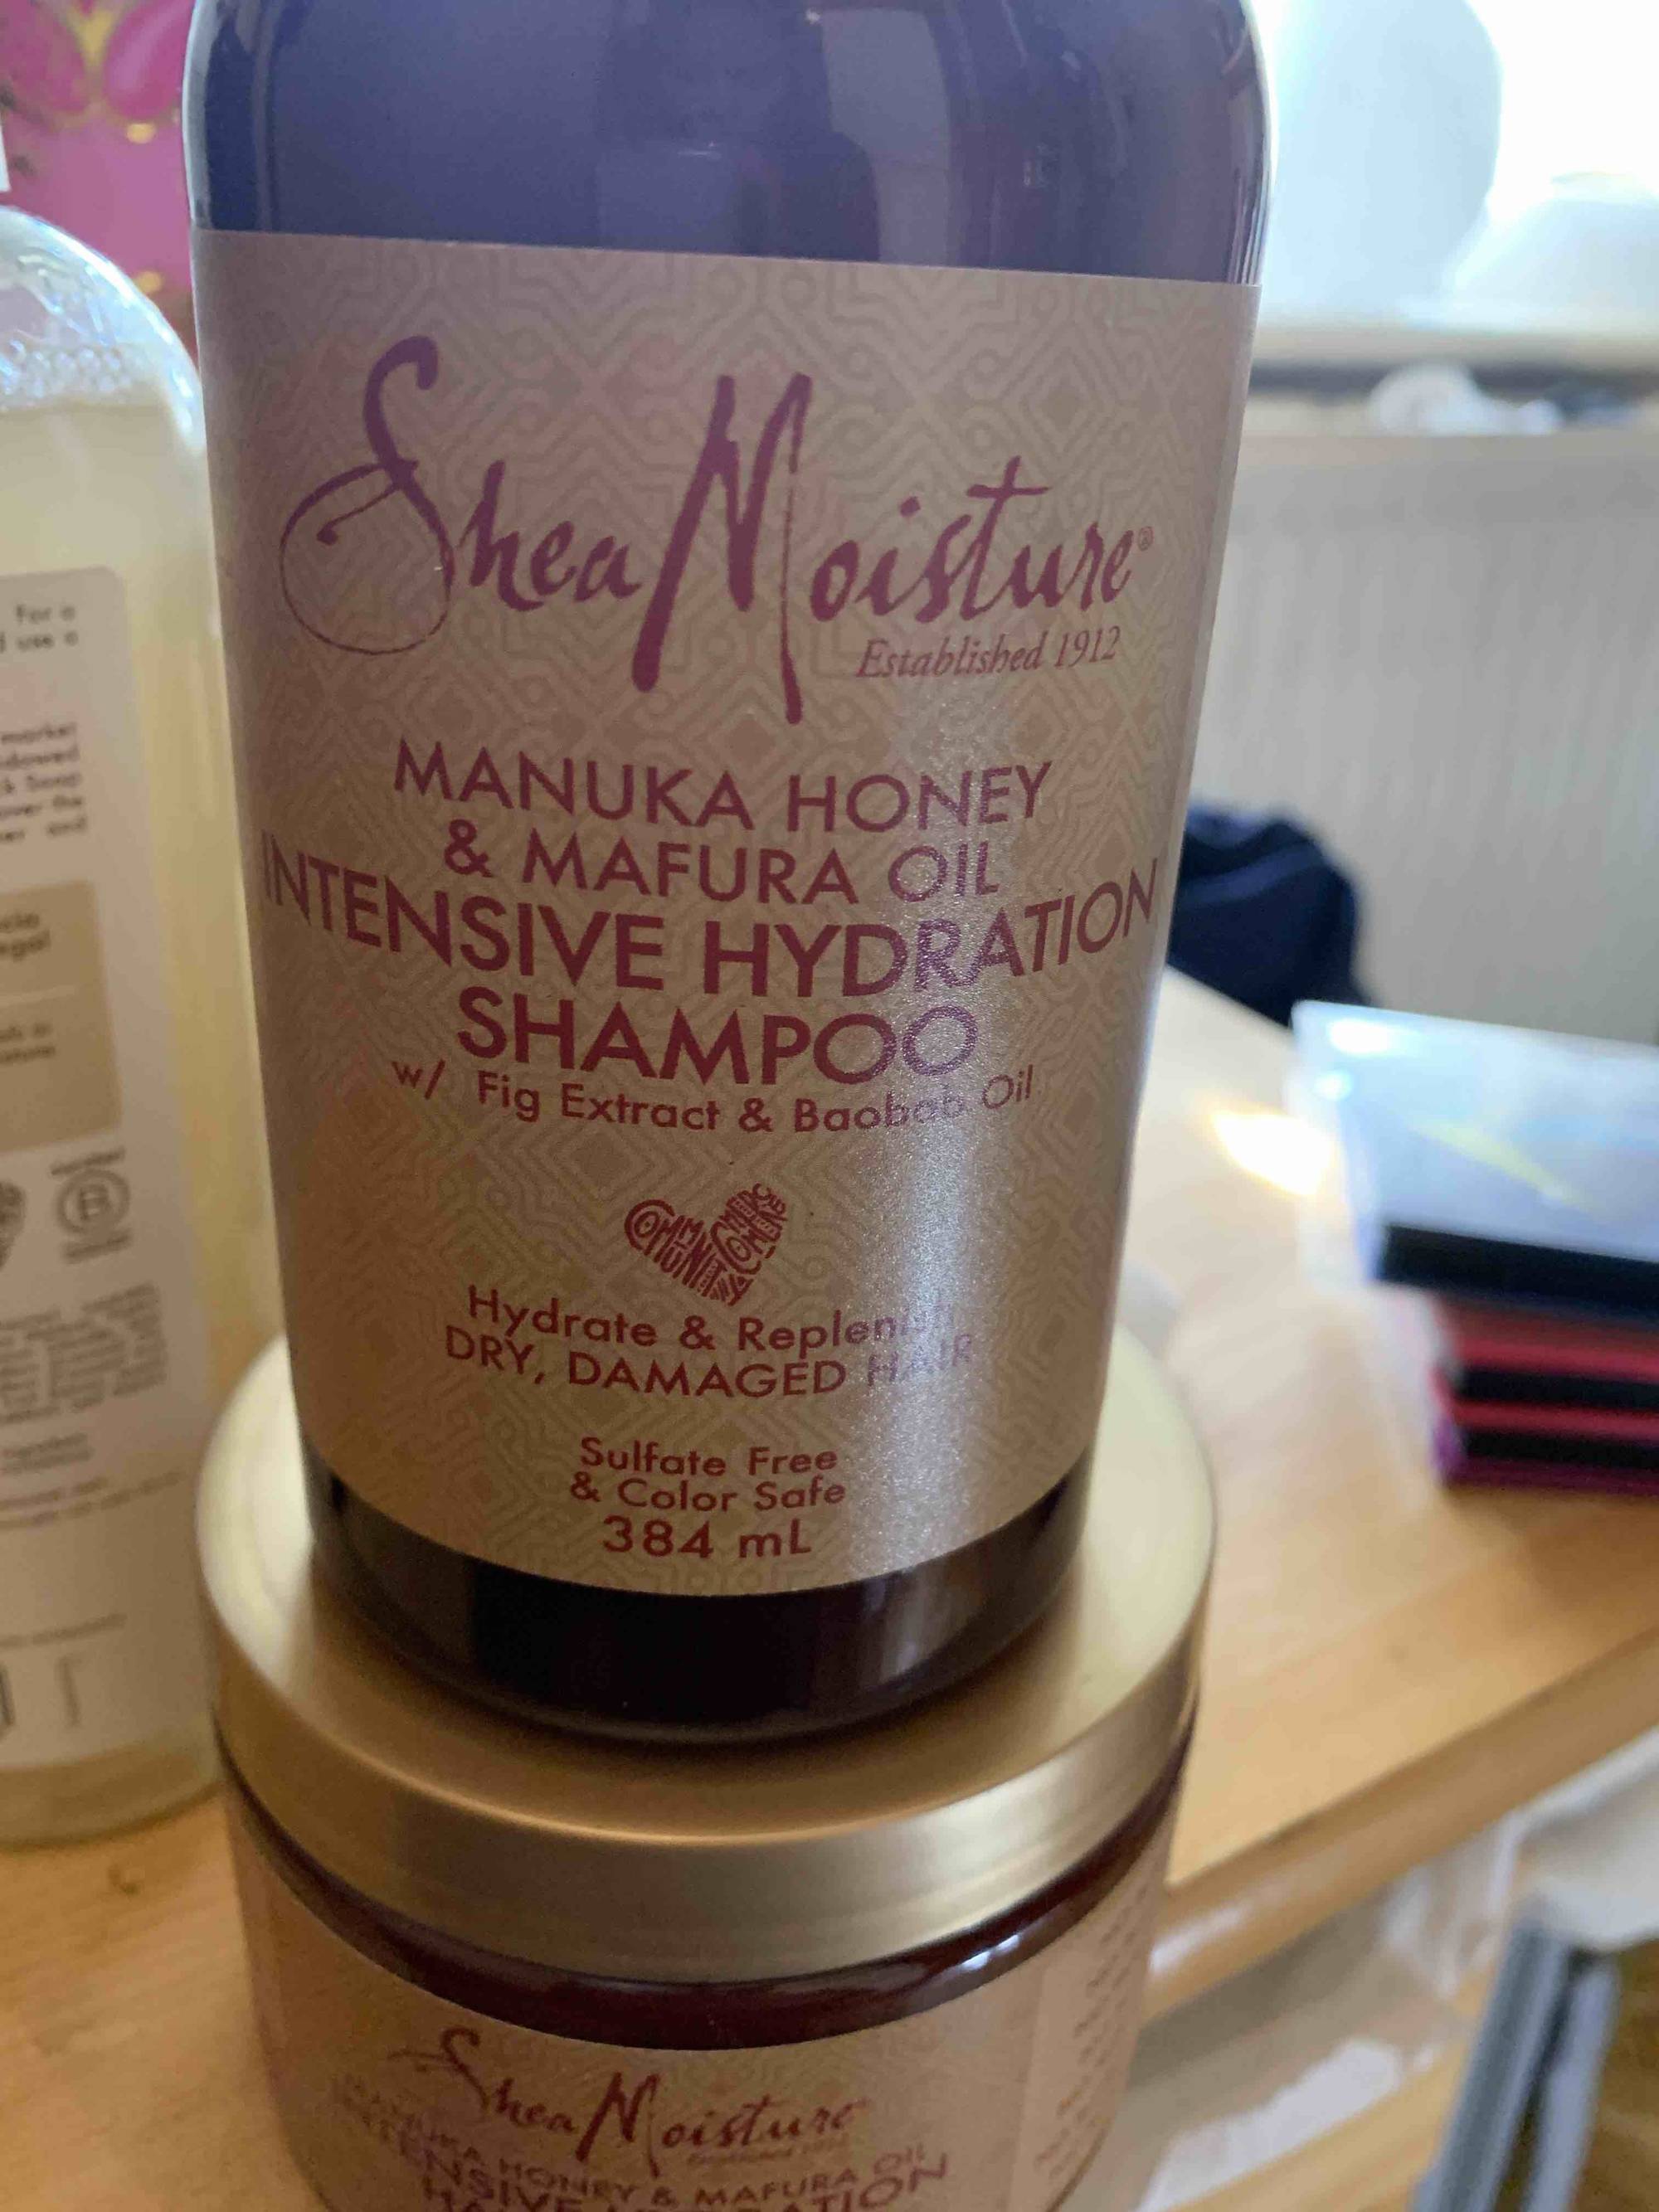 SHEA MOISTURE - Intensive hydration shampoo